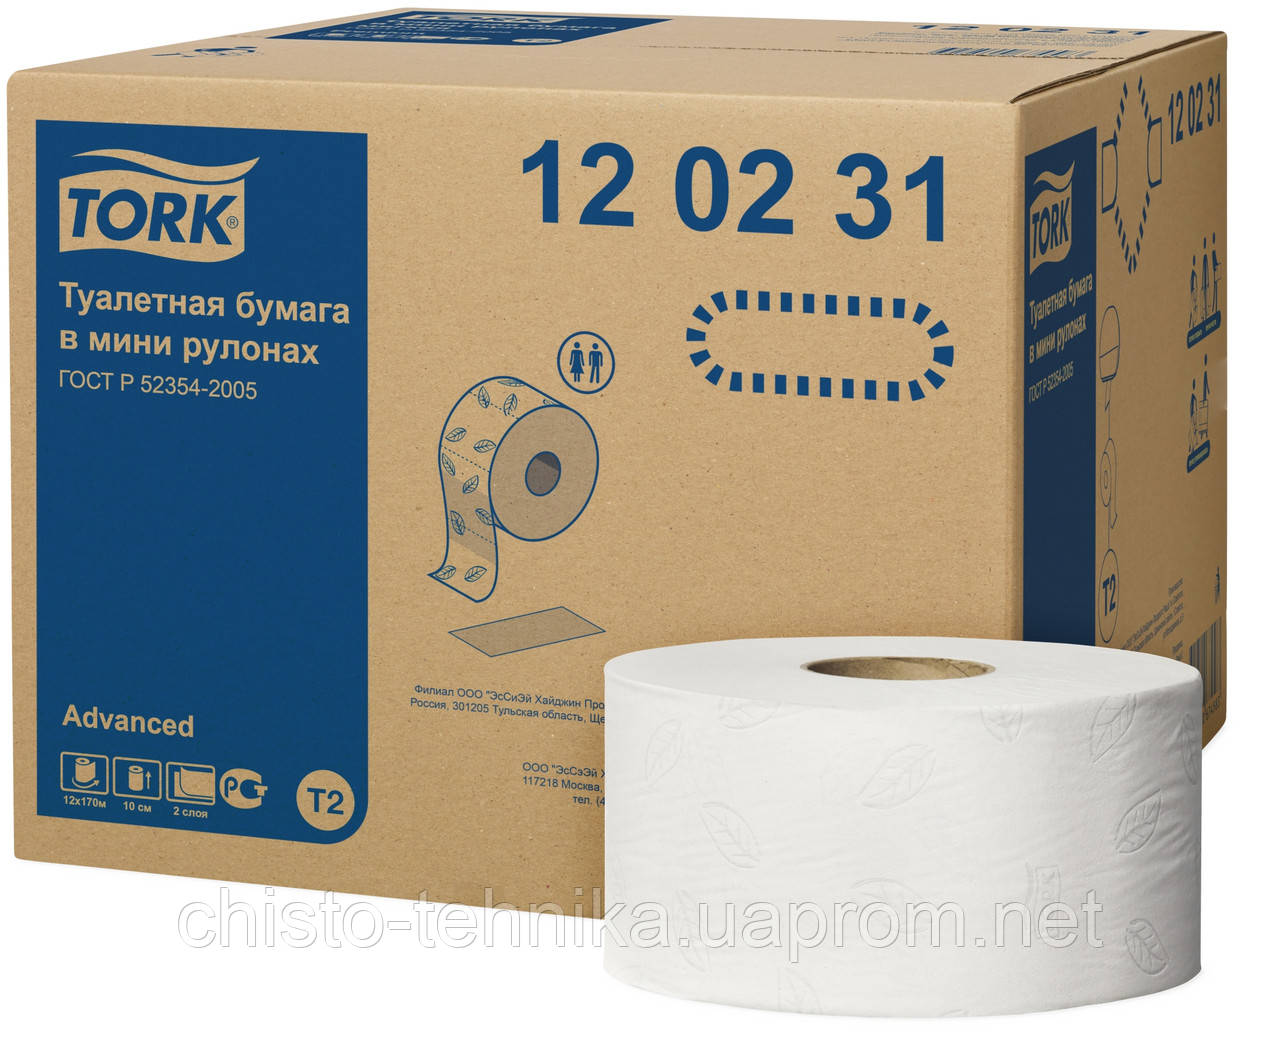 Tork туалетний папір в міні-рулонах (120231)